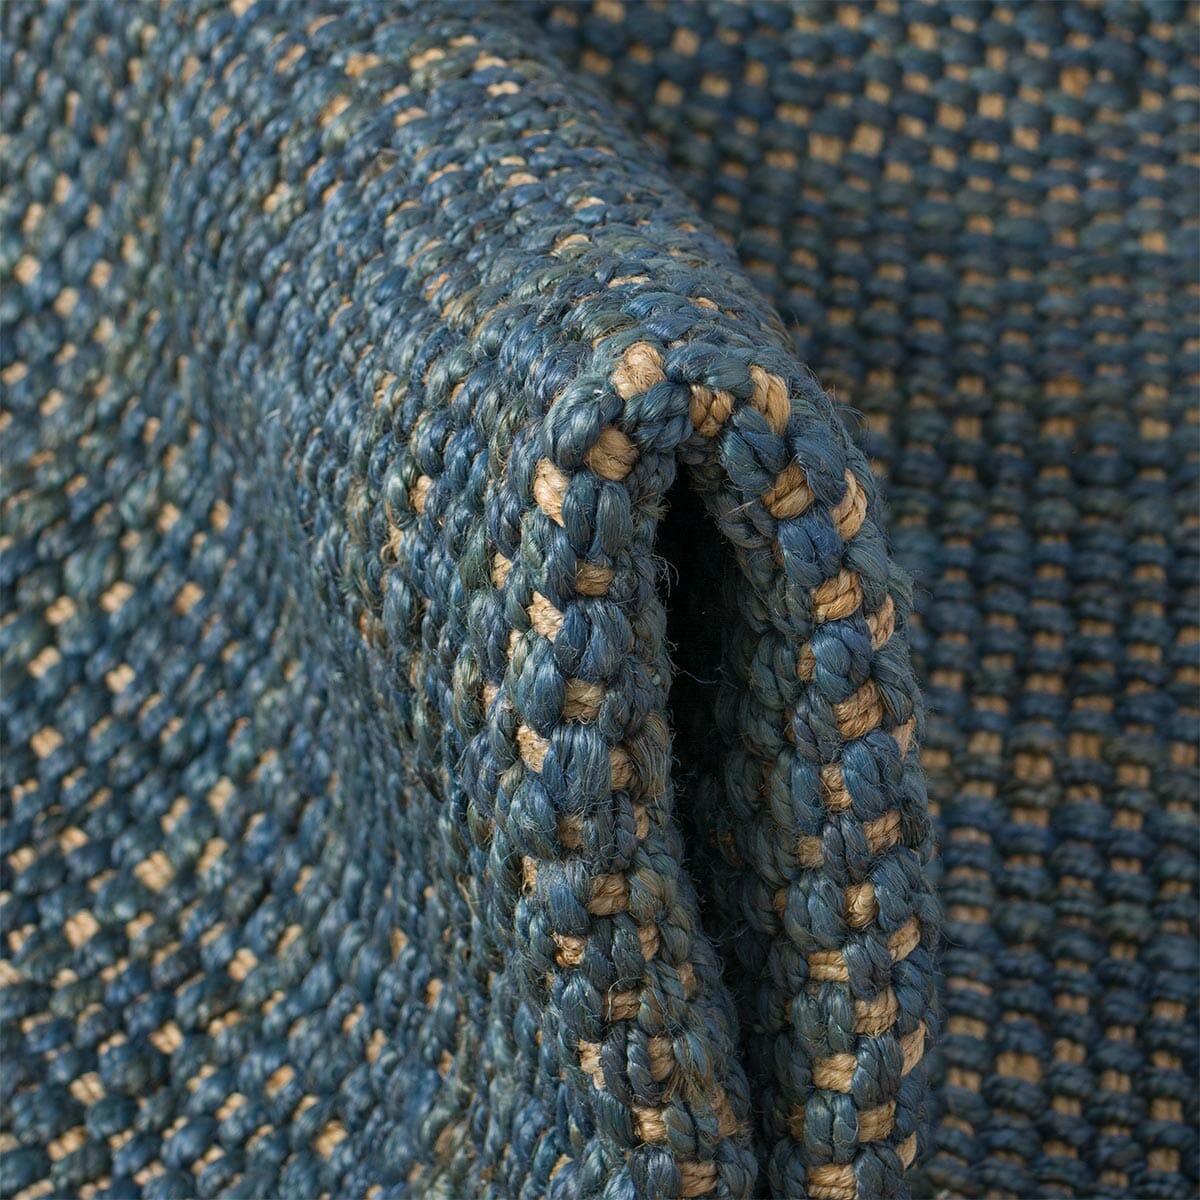 שטיח תמר אריגה גסה 06 כחול/בז' עגול | השטיח האדום